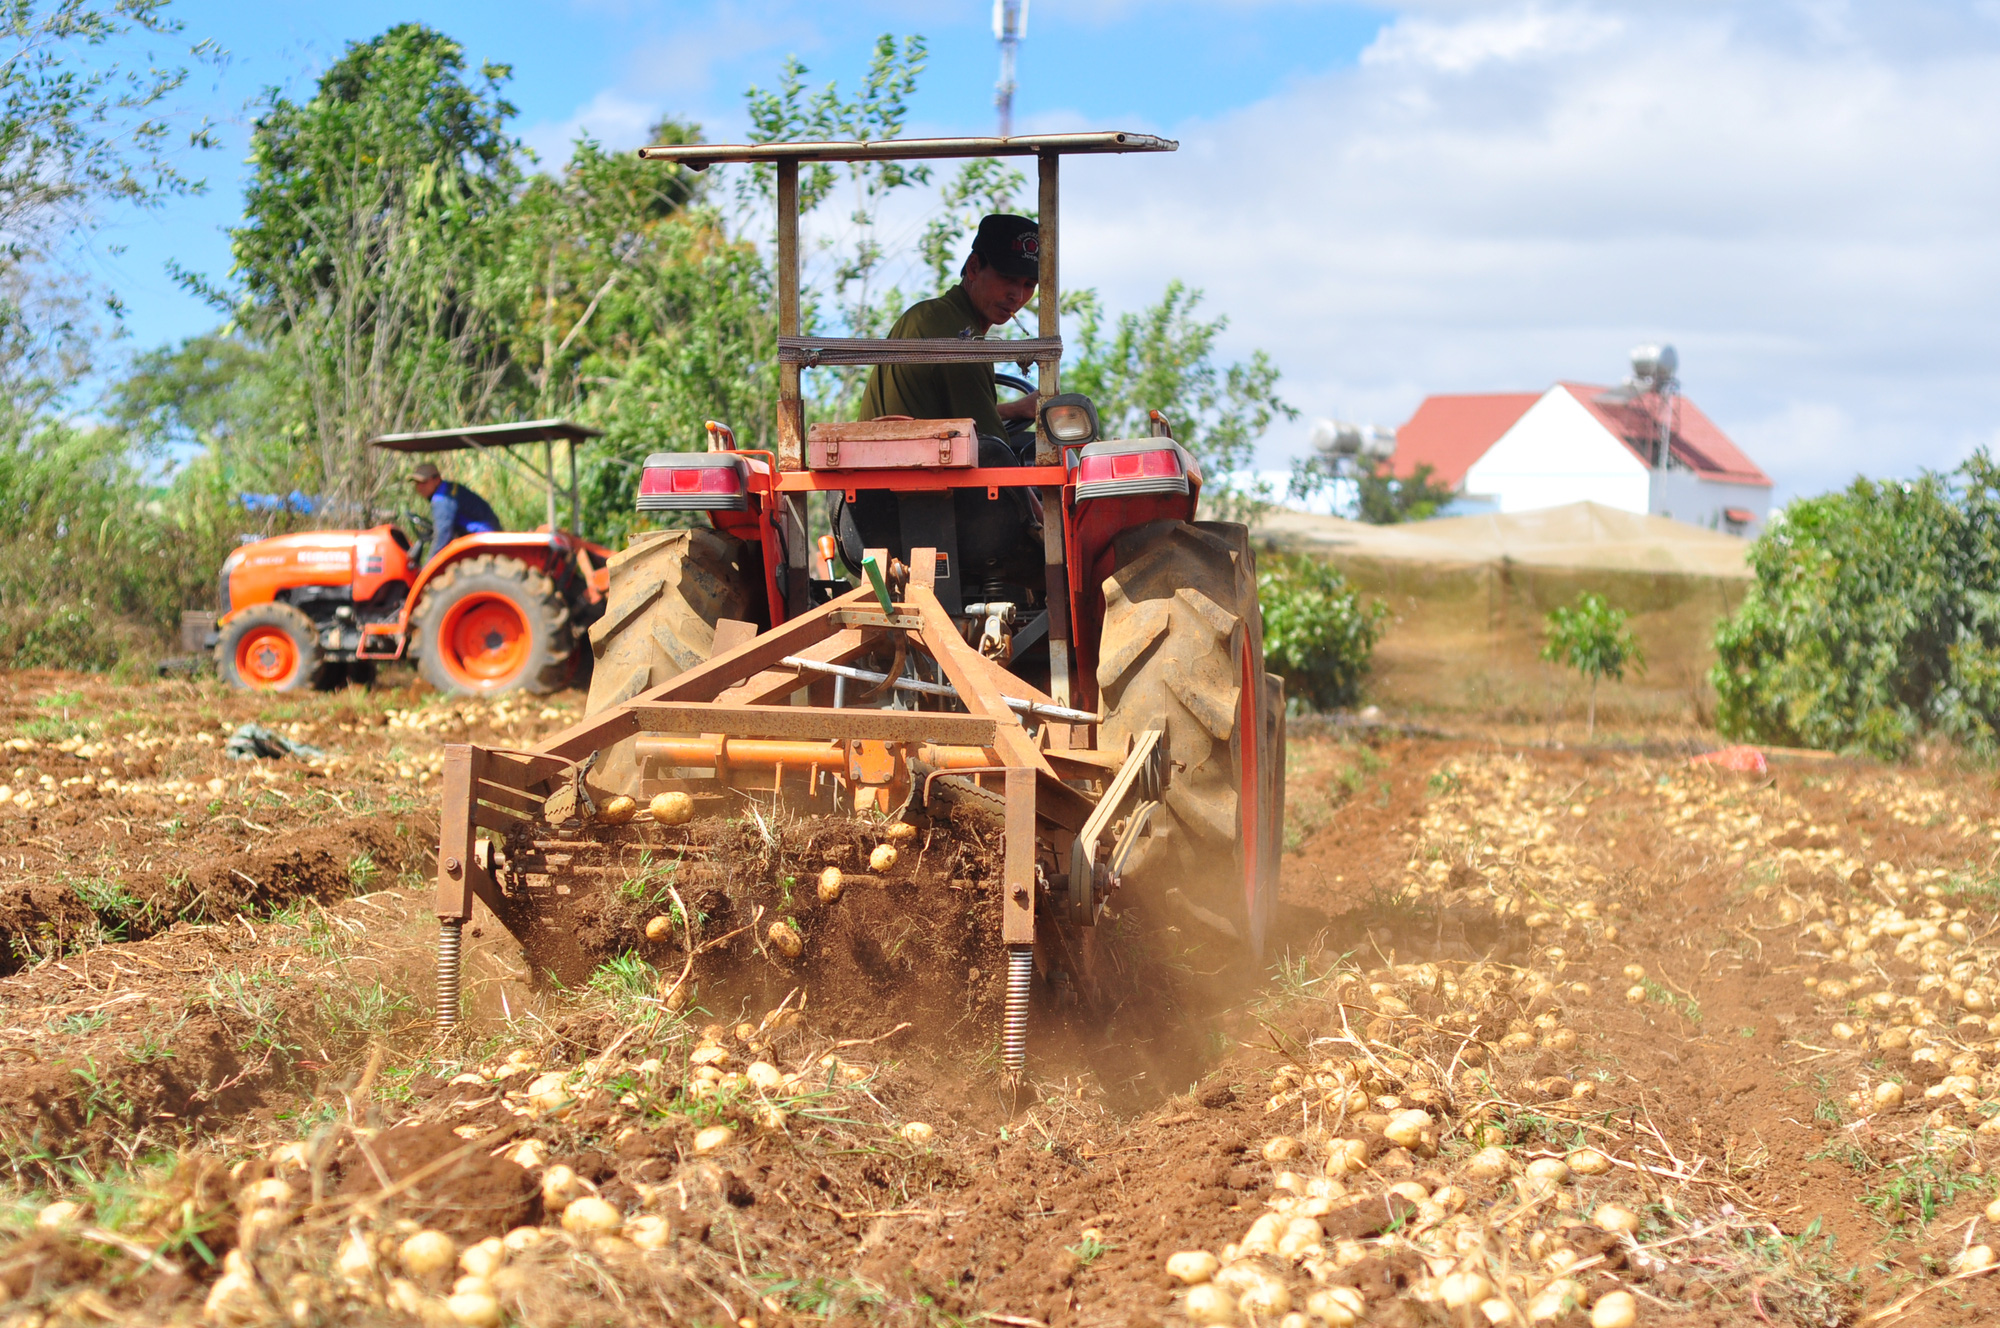 Liên kết trồng khoai tây, nông dân được ứng trước phân, giống vẫn lãi 170 triệu đồng/ha - Ảnh 4.